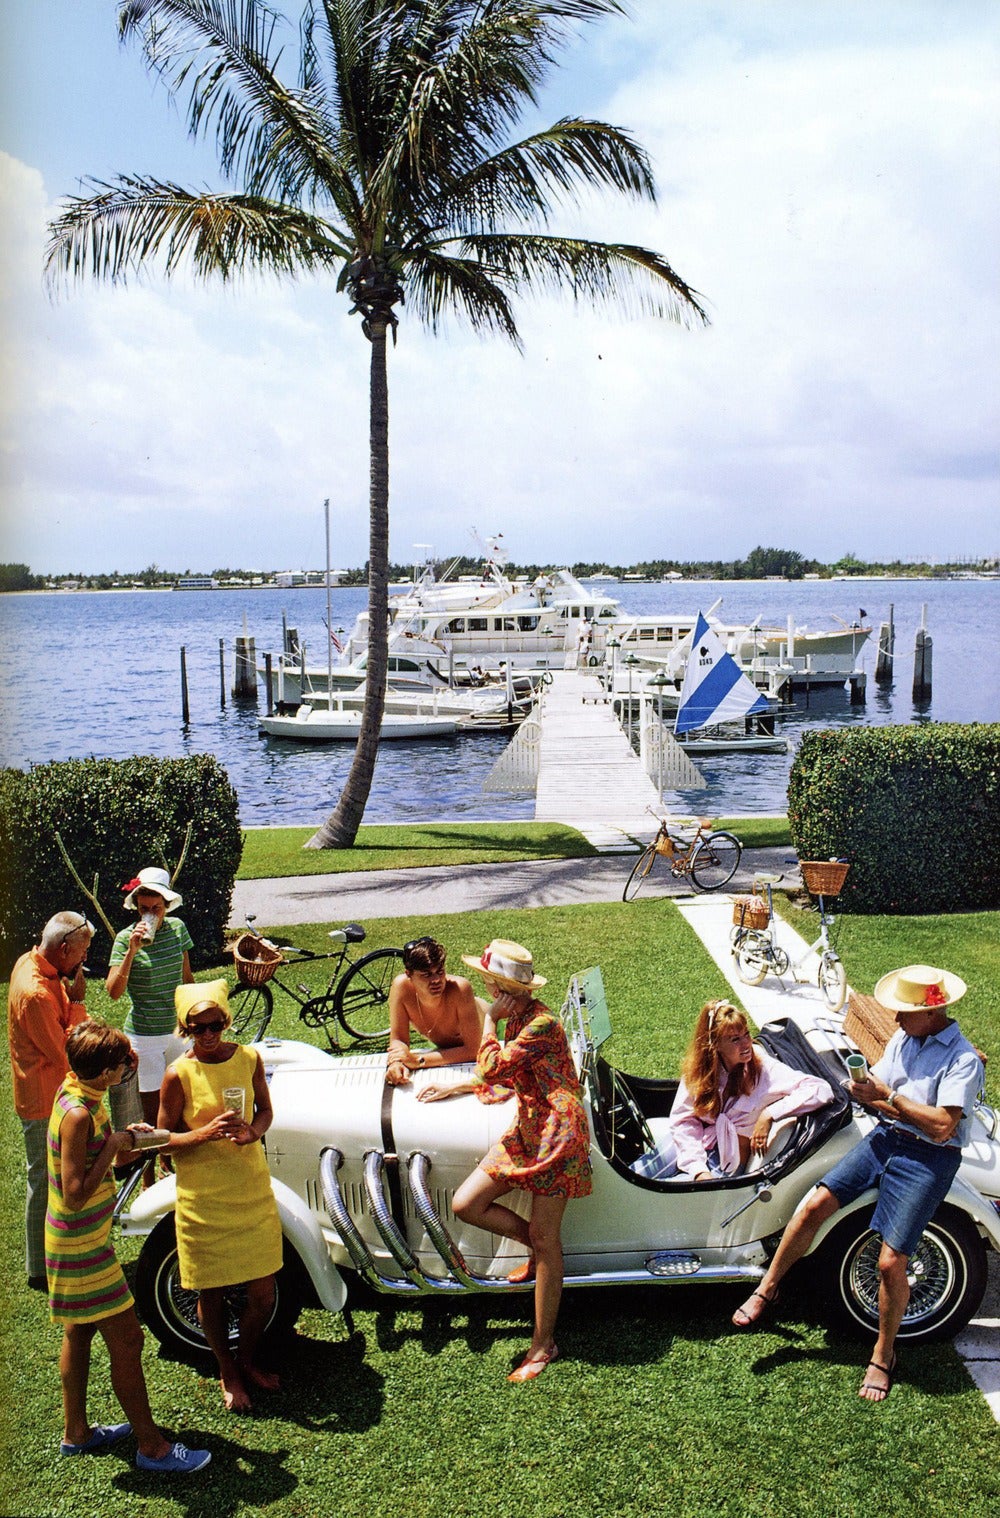 Jim Kimberly, sa femme (à l'extrême gauche) et ses amis avec sa voiture de sport blanche et ses bateaux blancs amarrés au lac Worth. Une mondaine de Palm Beach, Kimberly est consul honoraire de Jordanie. Avril 1968.  (Slim Aarons / Getty Images)

40